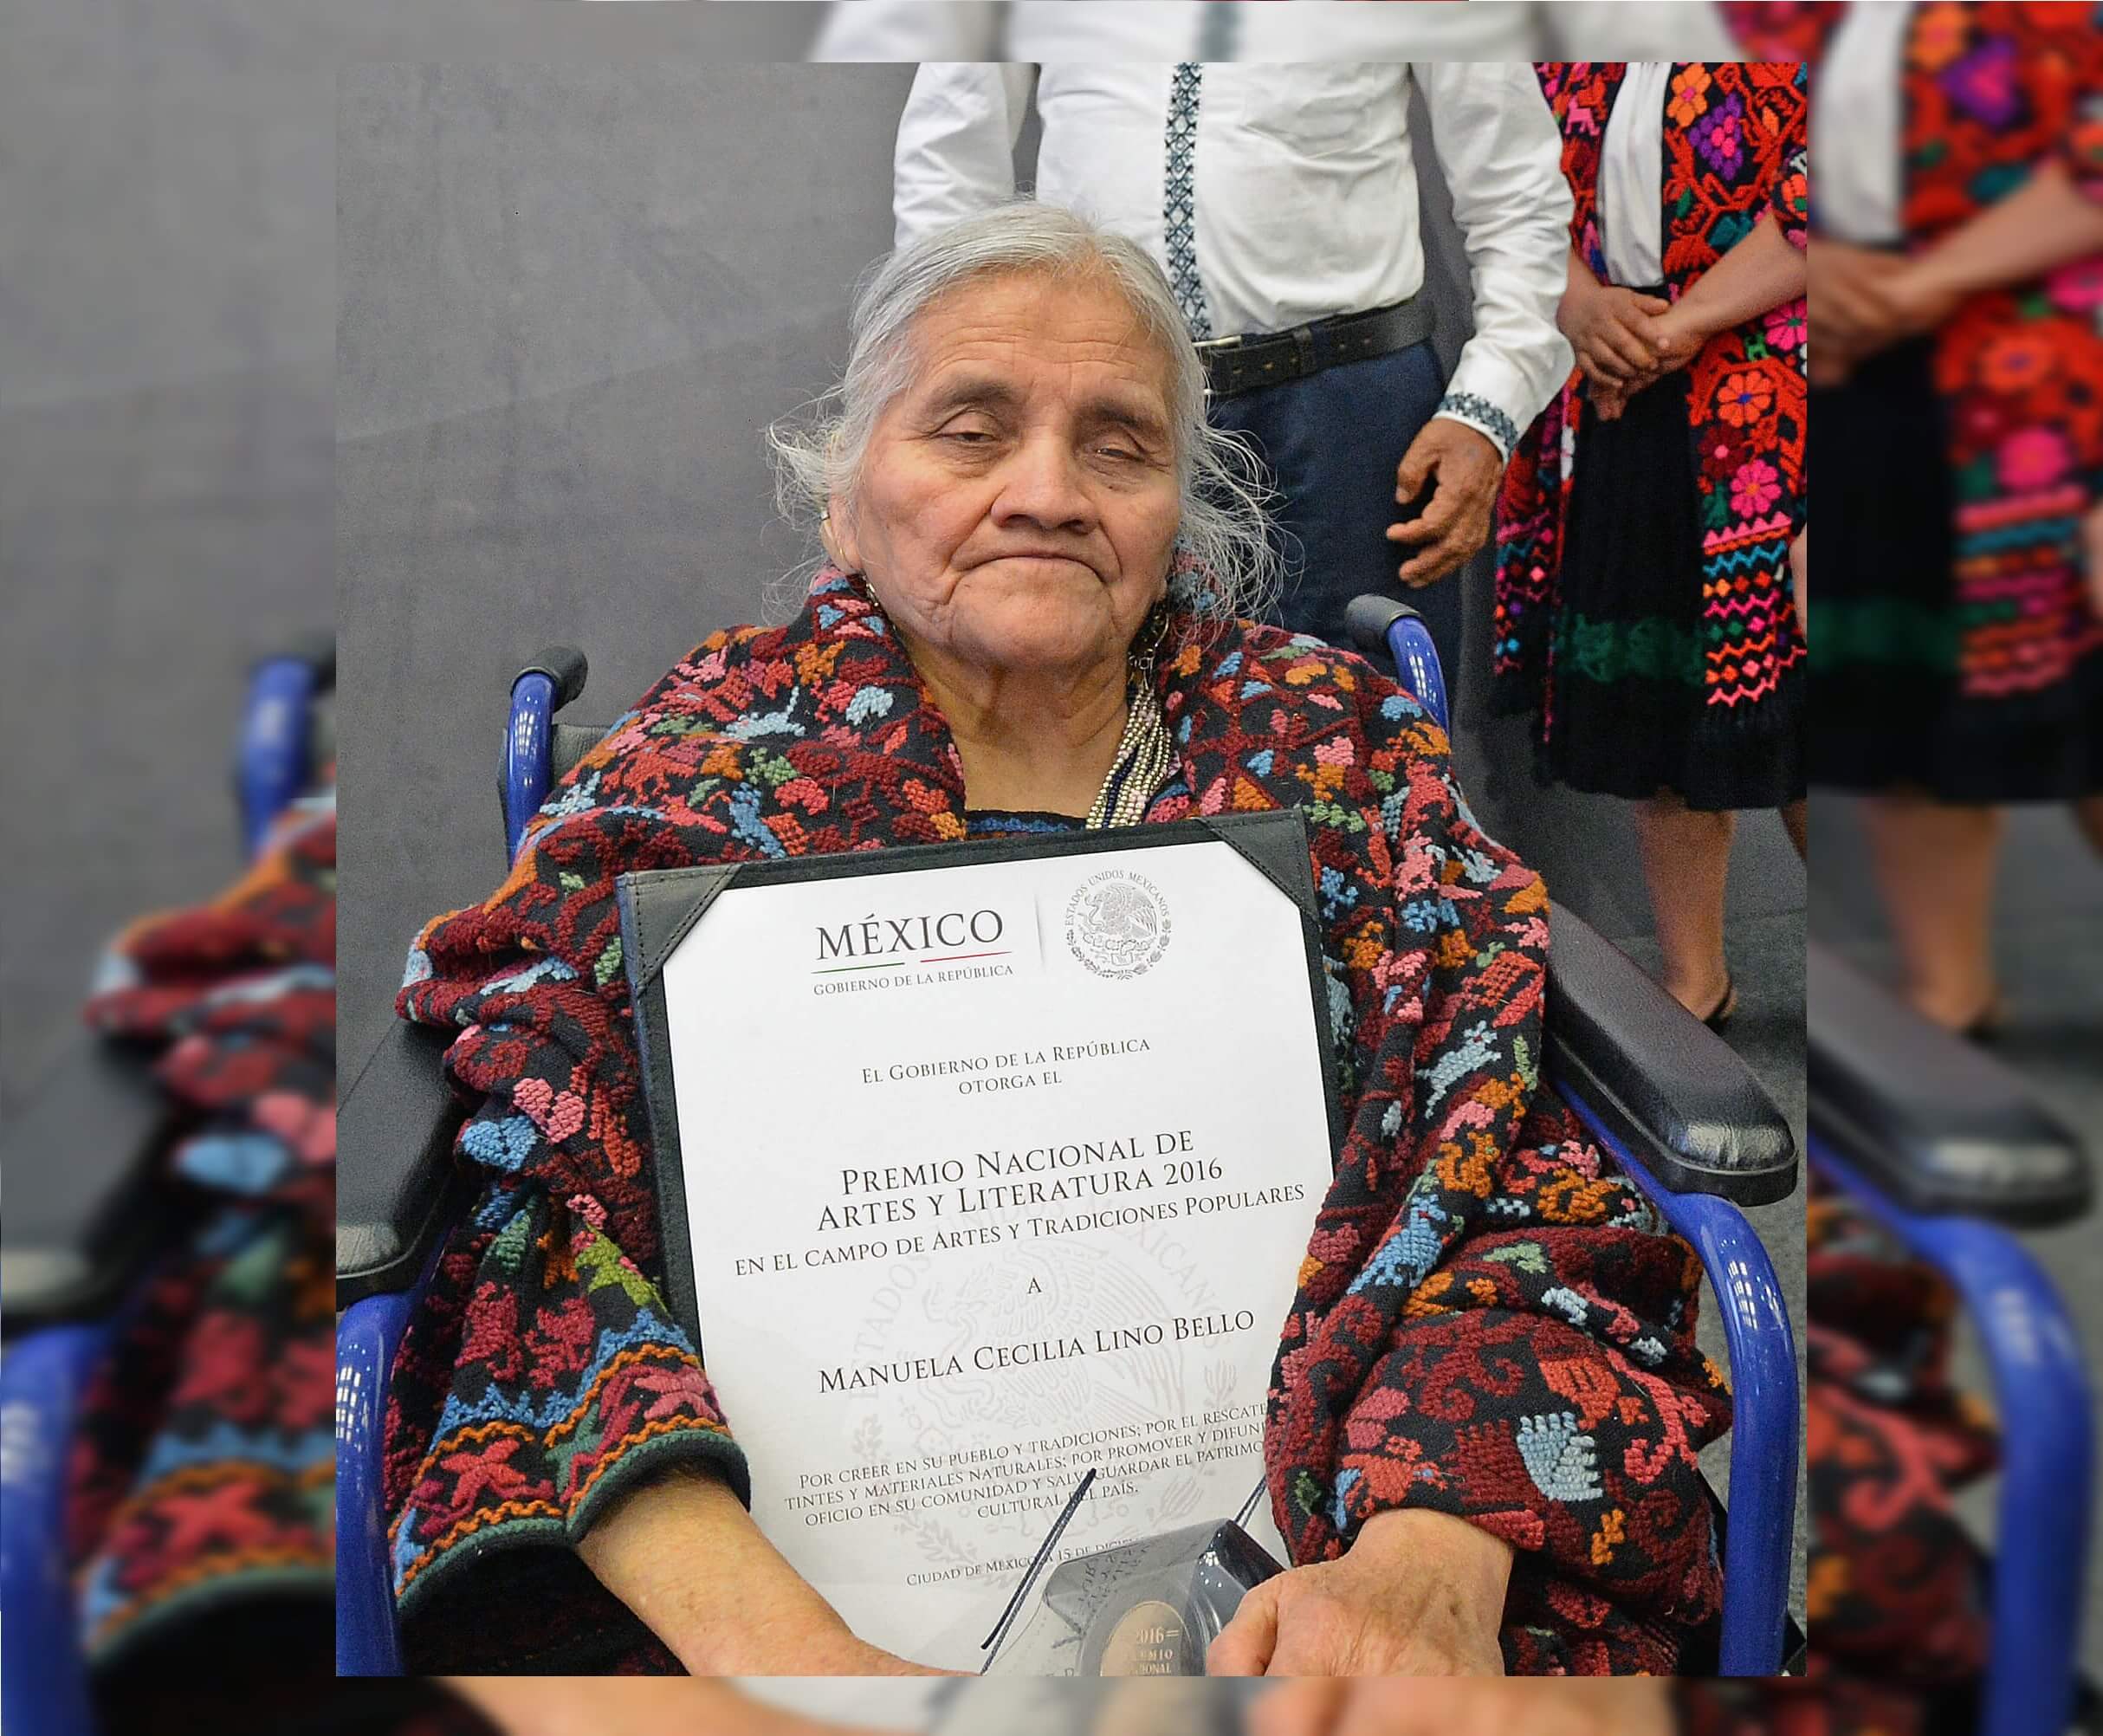 La maestra Manuela Cecilia Lino Bello, Premio Nacional de Artes y Literatura 2016, en la categoría de Artes y Tradiciones Populares, era originaria de Hueyapan, Puebla. (Secretaría de Cultura)